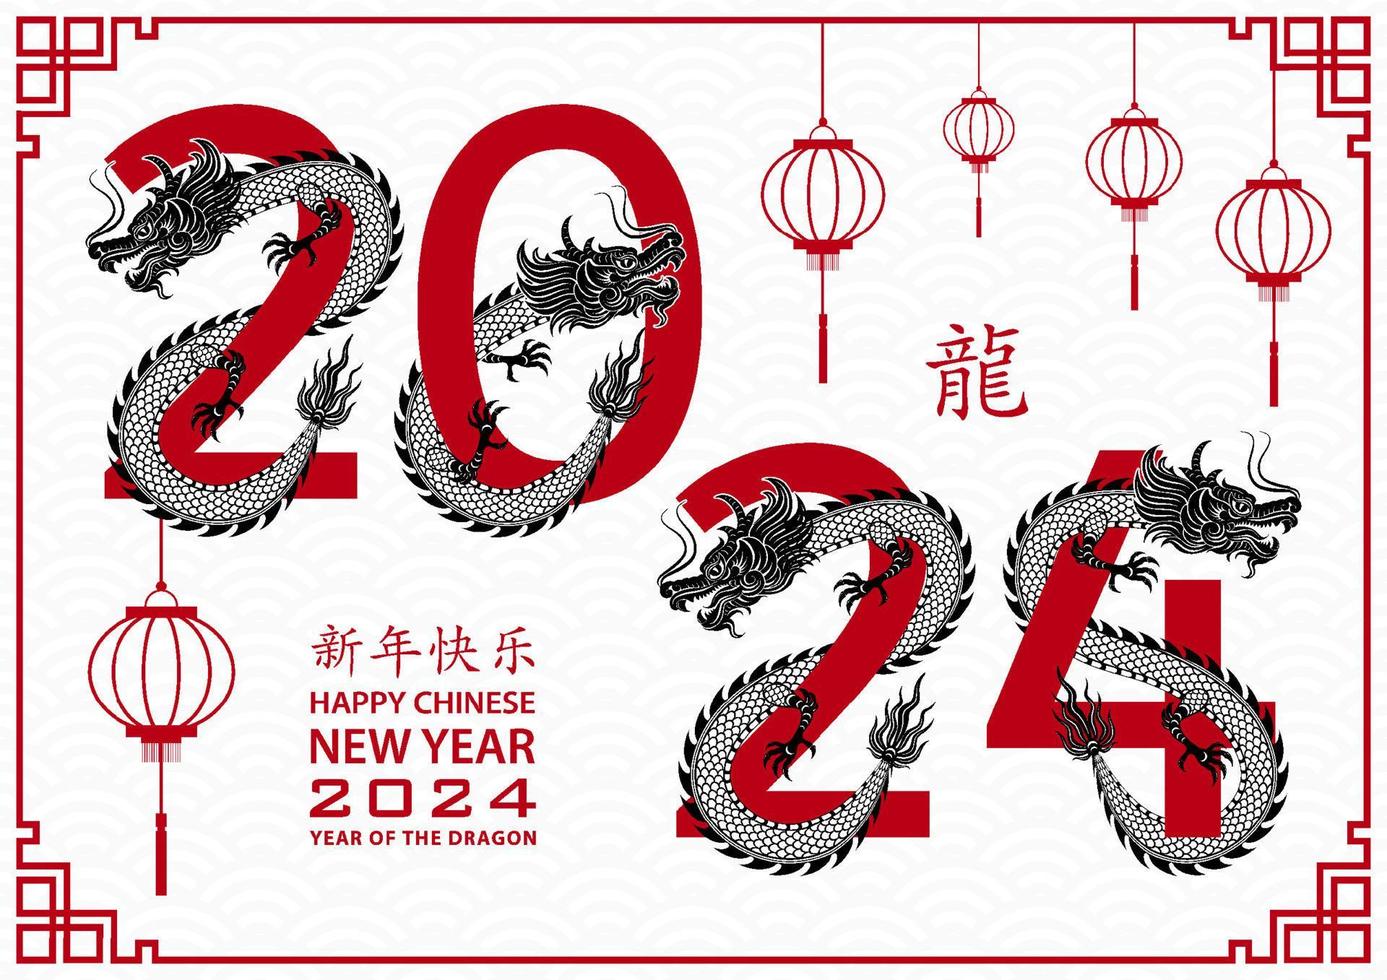 feliz ano novo chinês 2024 signo do zodíaco, ano do dragão vetor